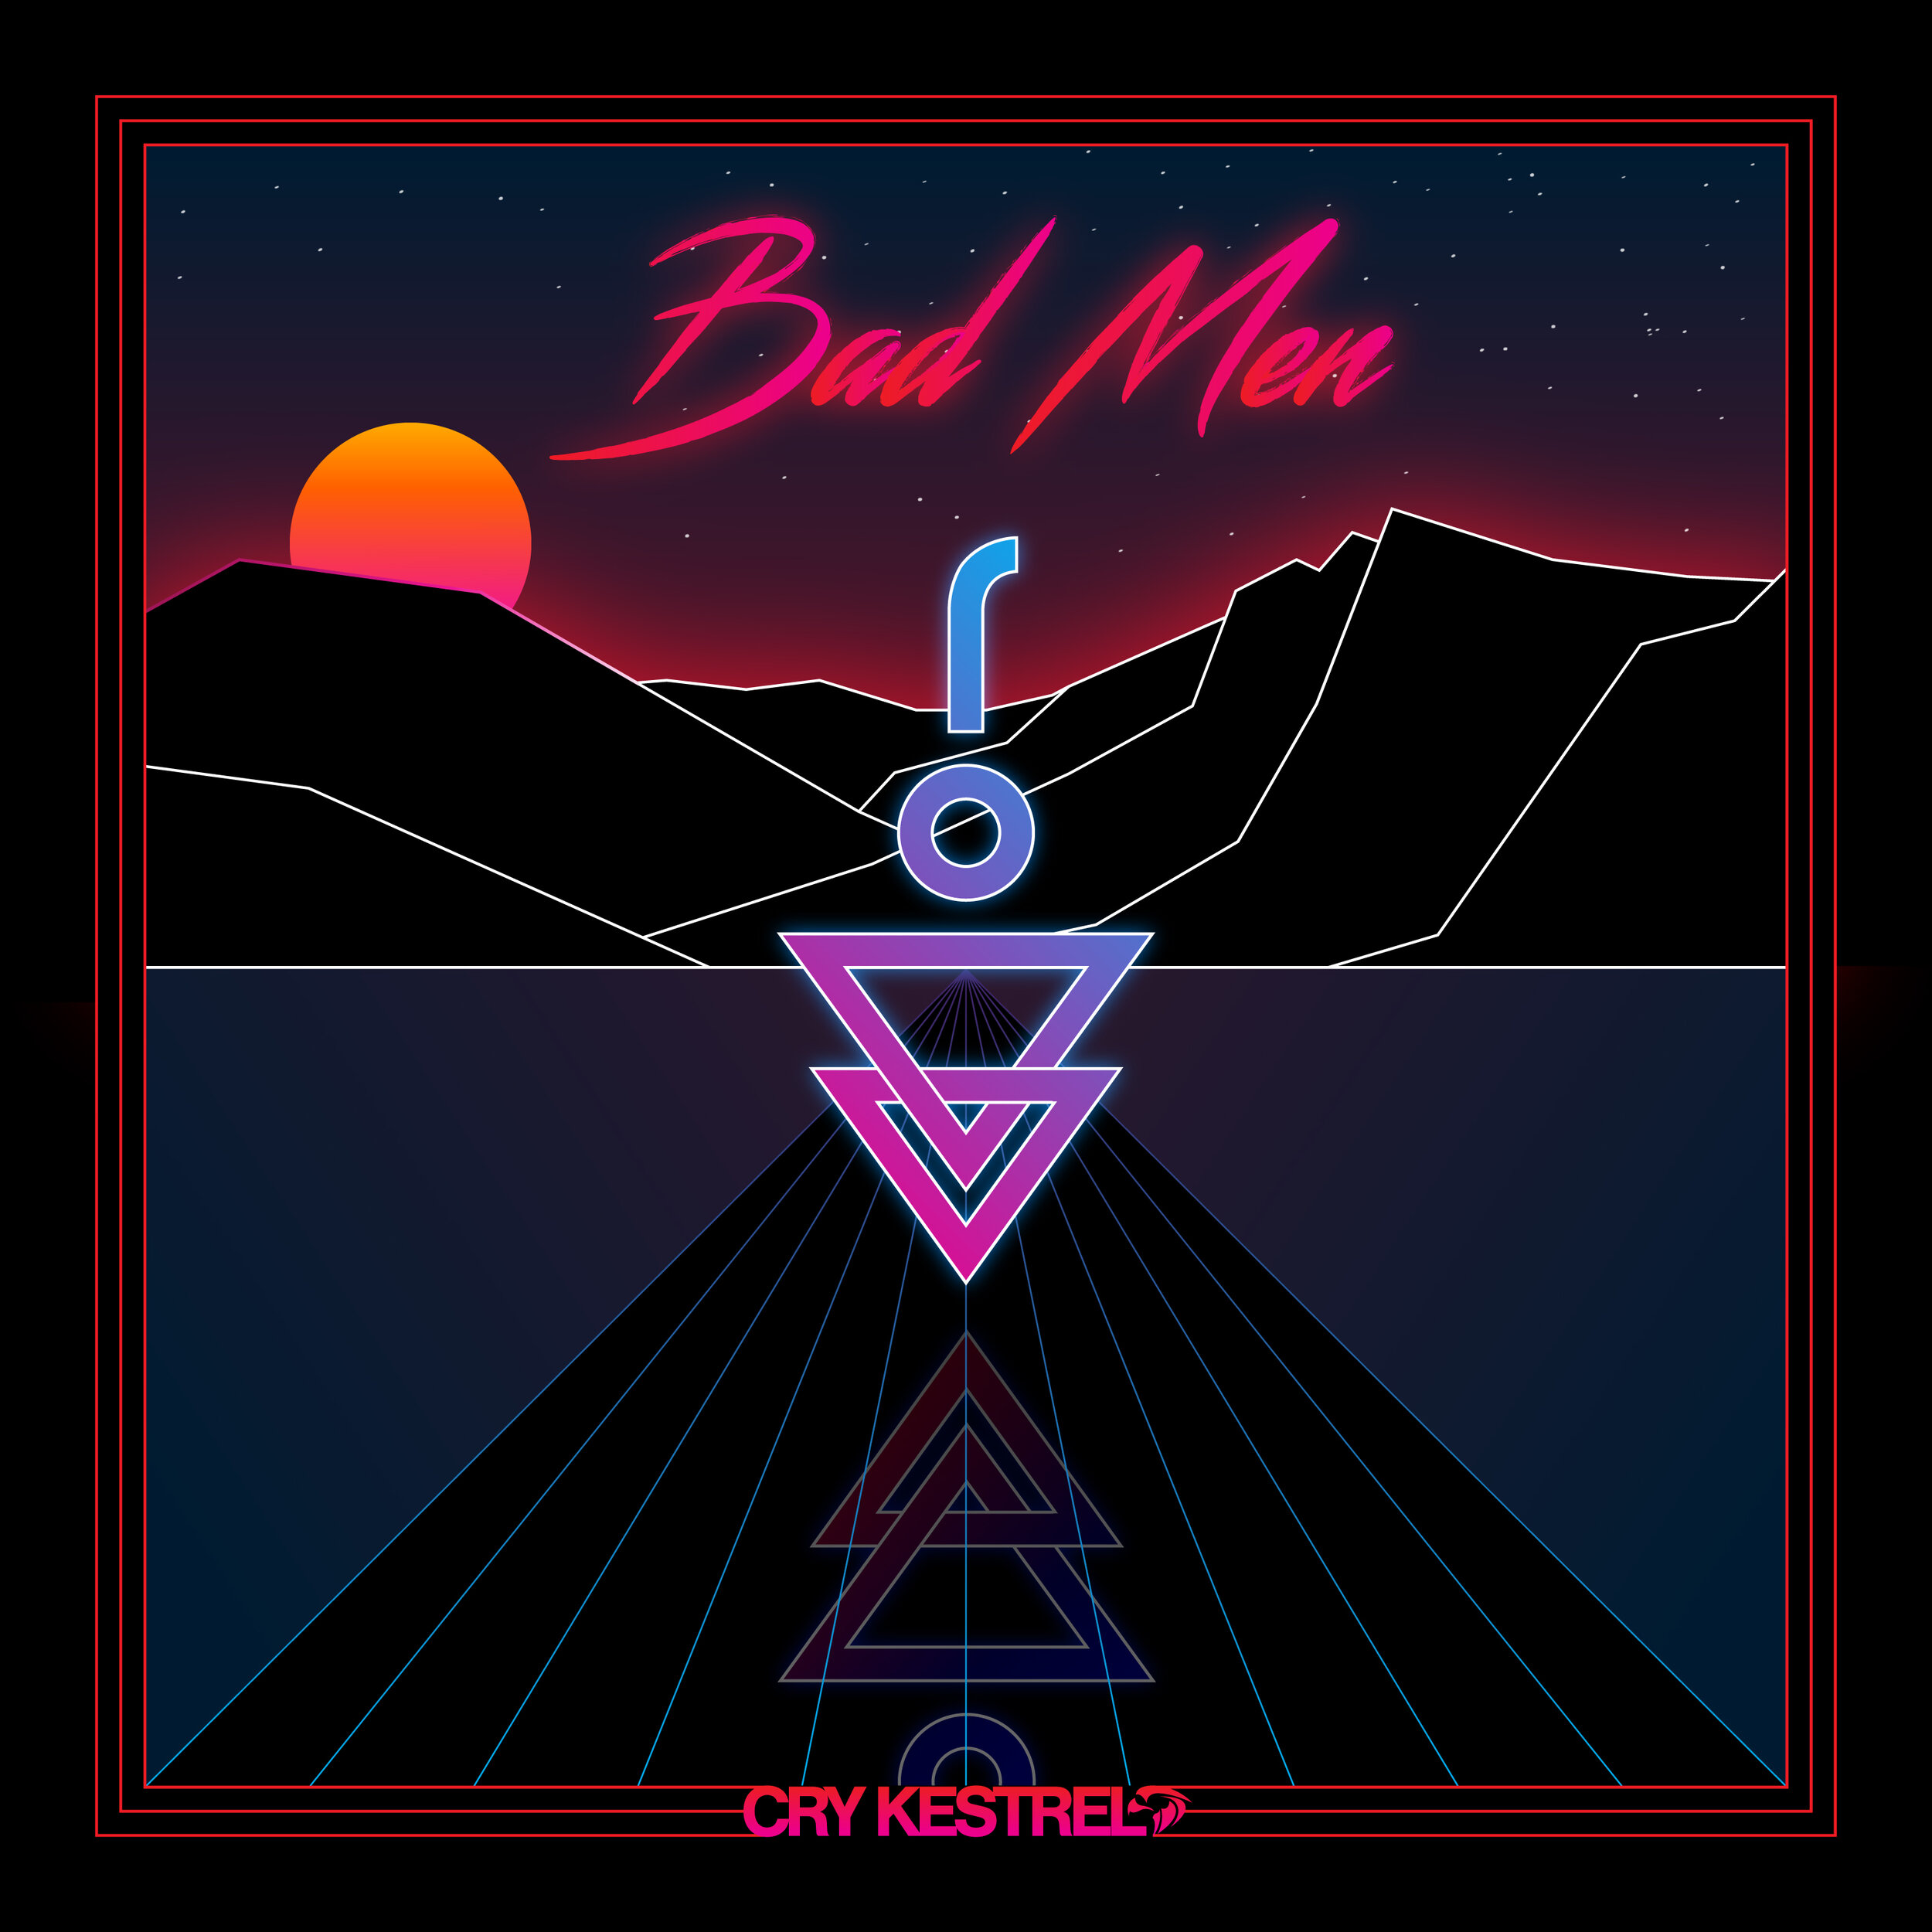 Cry Kestrel - Bad Men